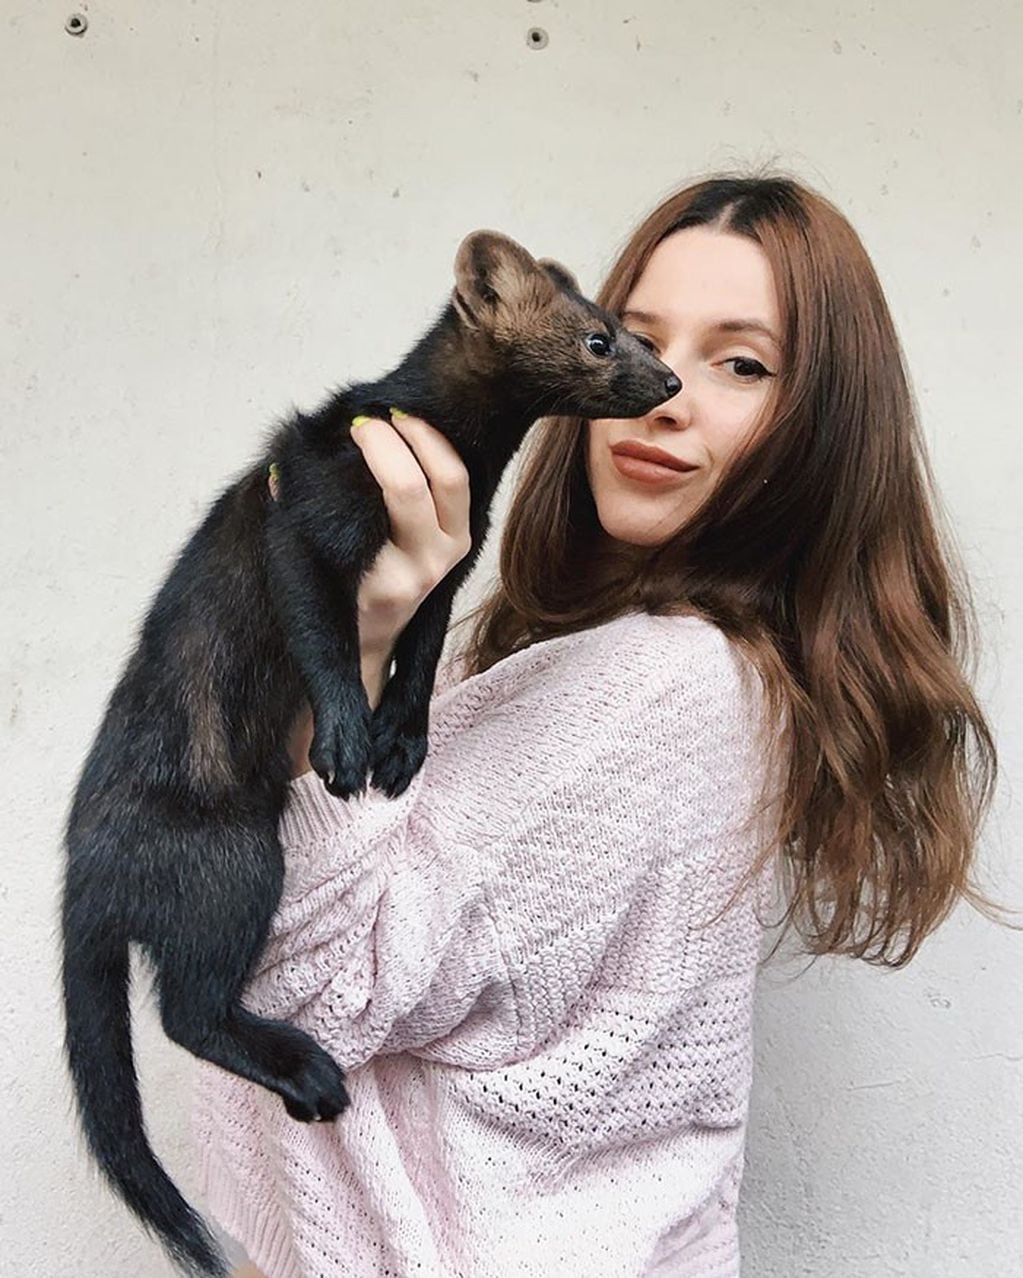 La joven compró al pequeño mamífero por un valor de 15.000 rublos (unos 235 dólares en su momento).(Instagram/@russian_sable)